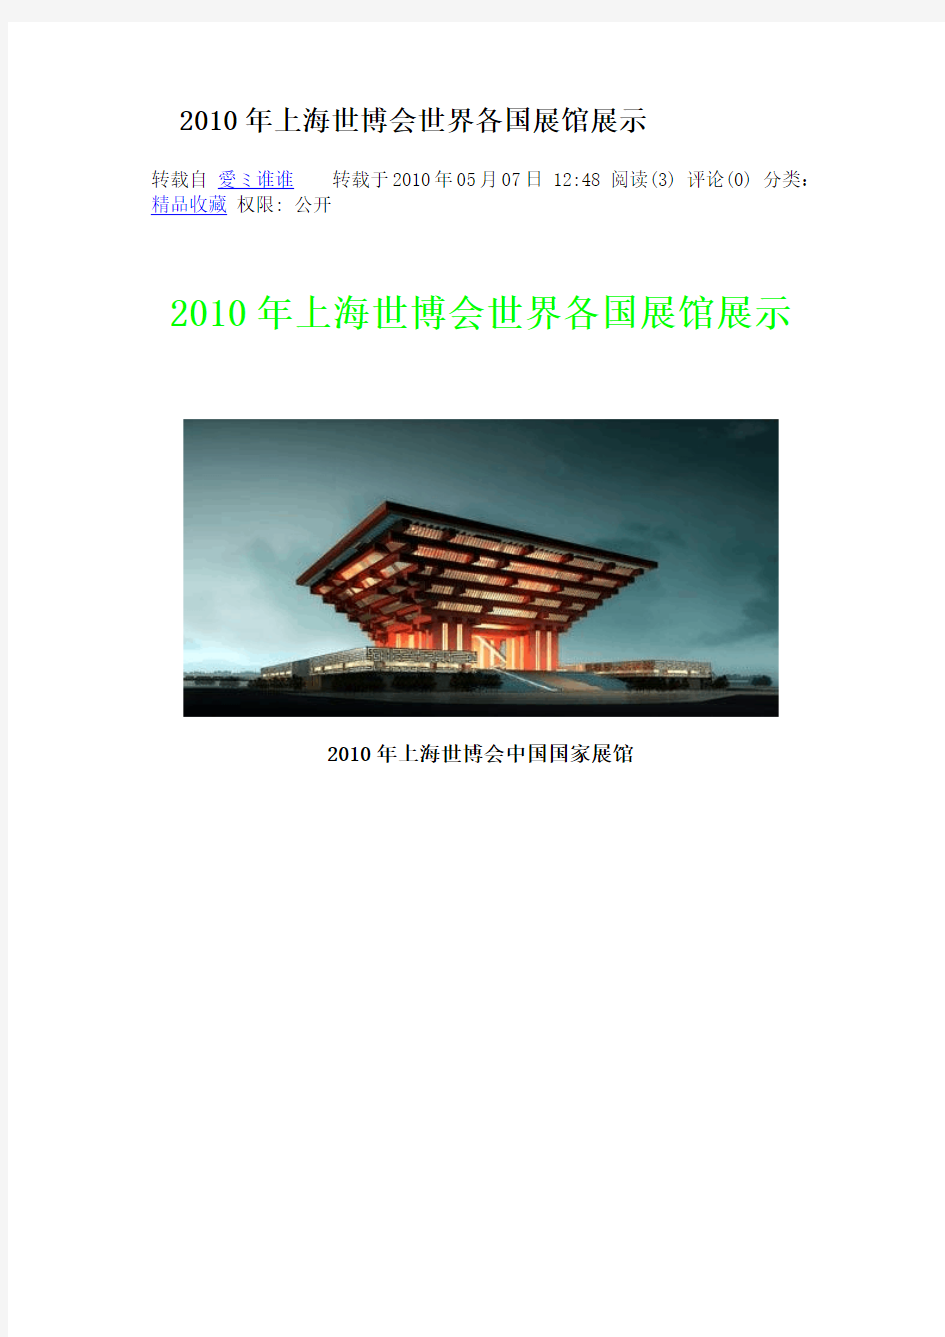 2010年上海世博会世界各国展馆展示